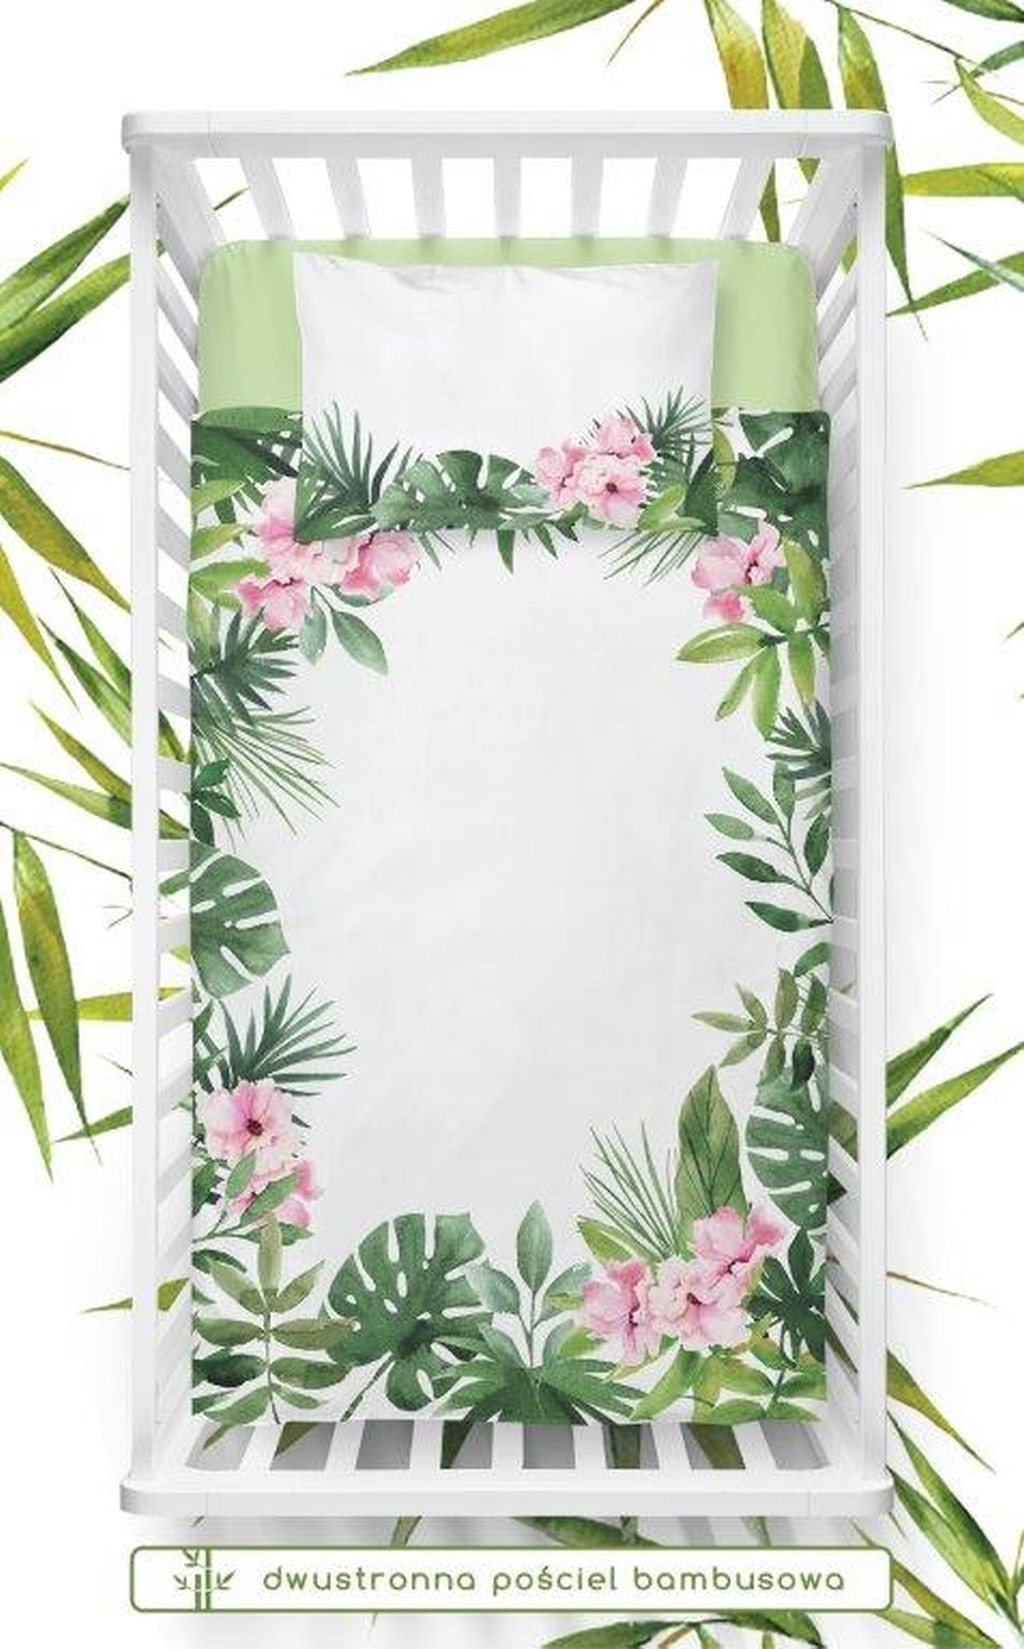 domtextilu.sk Obojstranné bambusové obliečky pre deti v bielej farbe s tropickým lístím a ružovými kvetinami 32274-162393